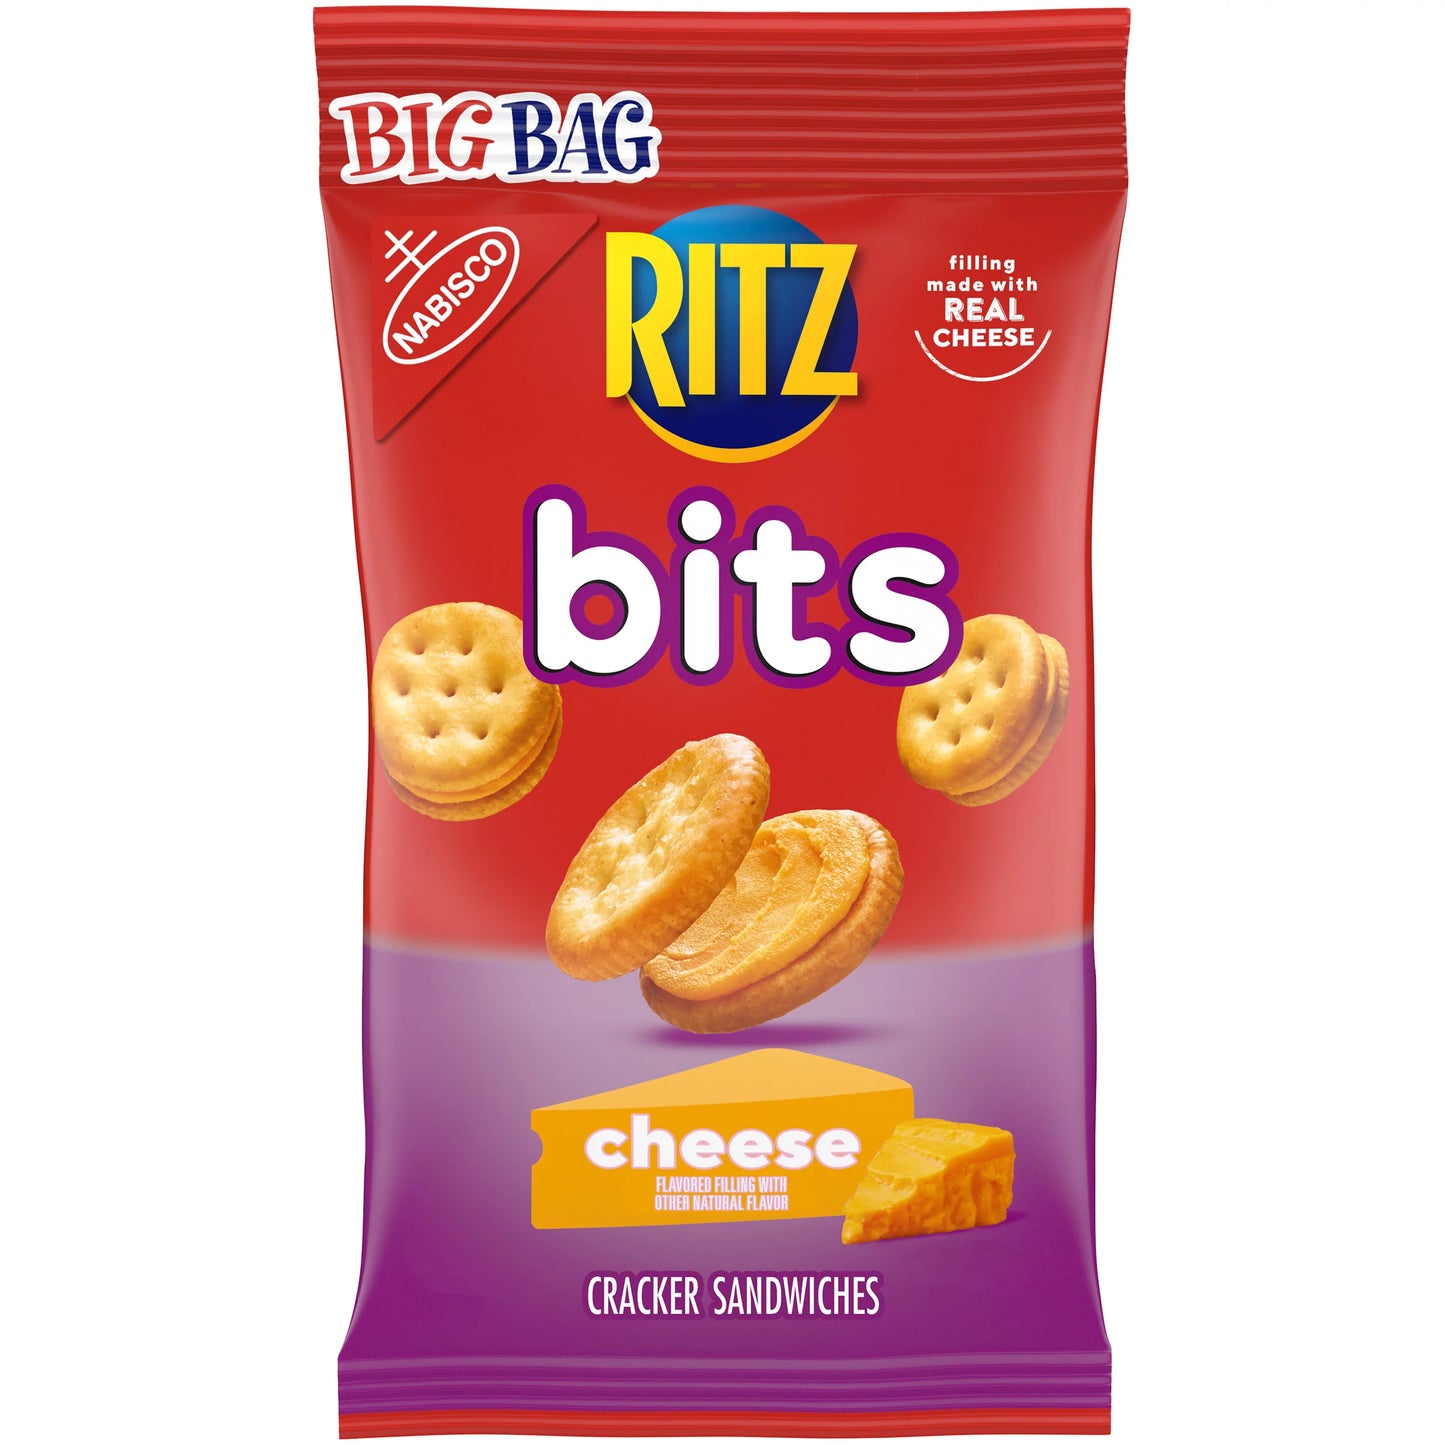 RITZ BITS BIG BAG